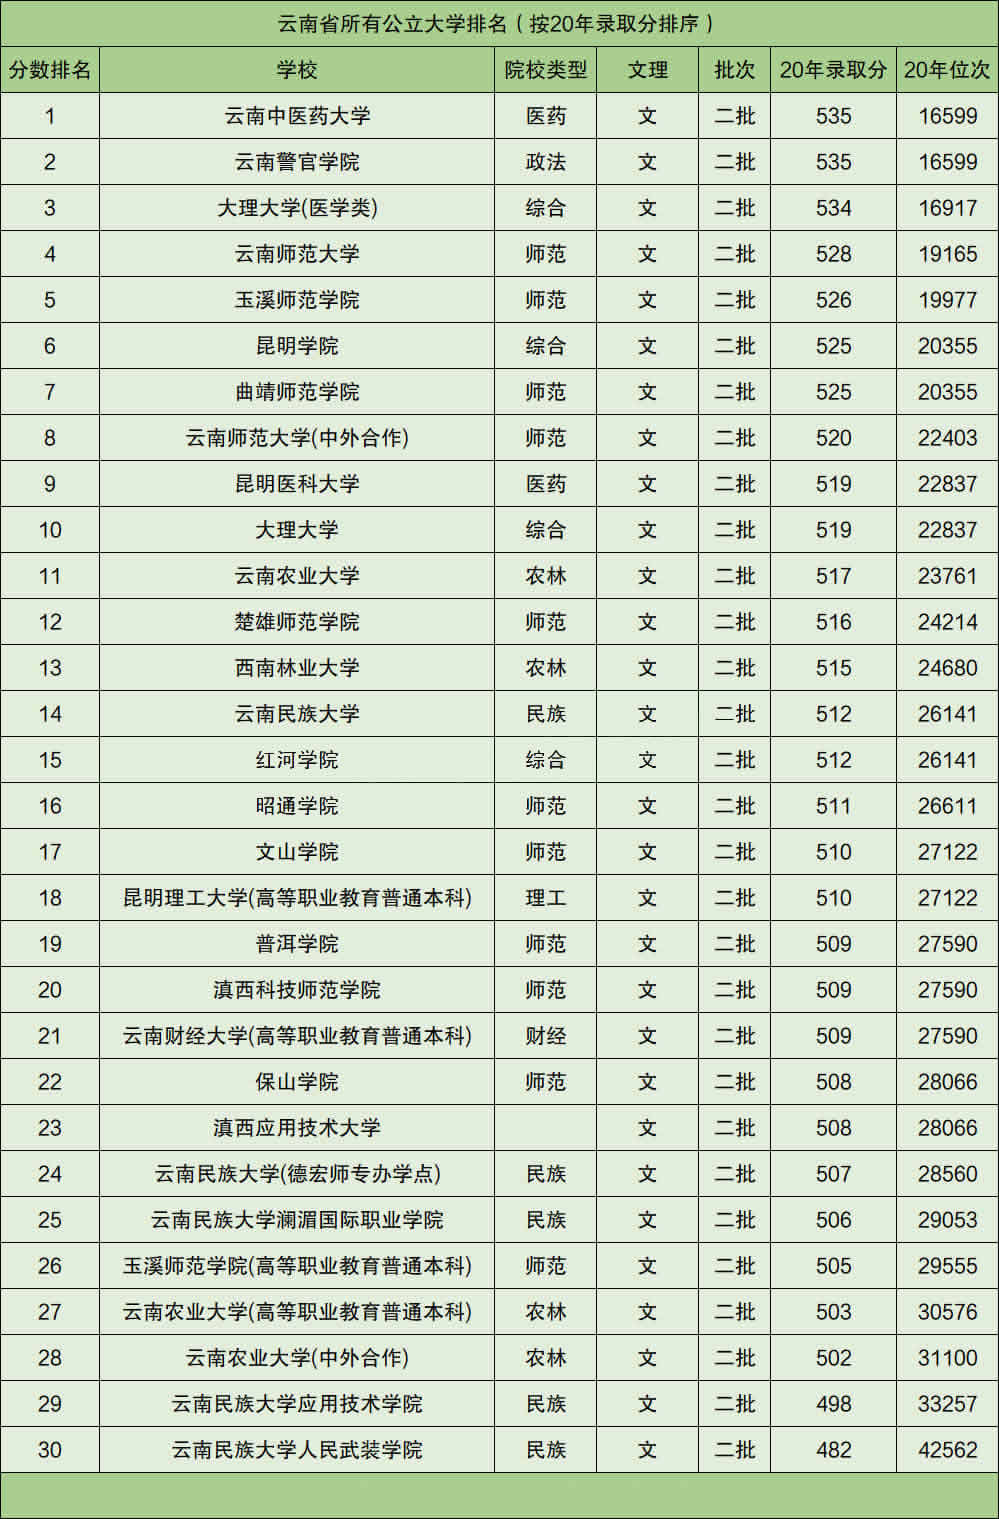 2、中国最贫困省份排名:中国最穷的省份是哪里.?